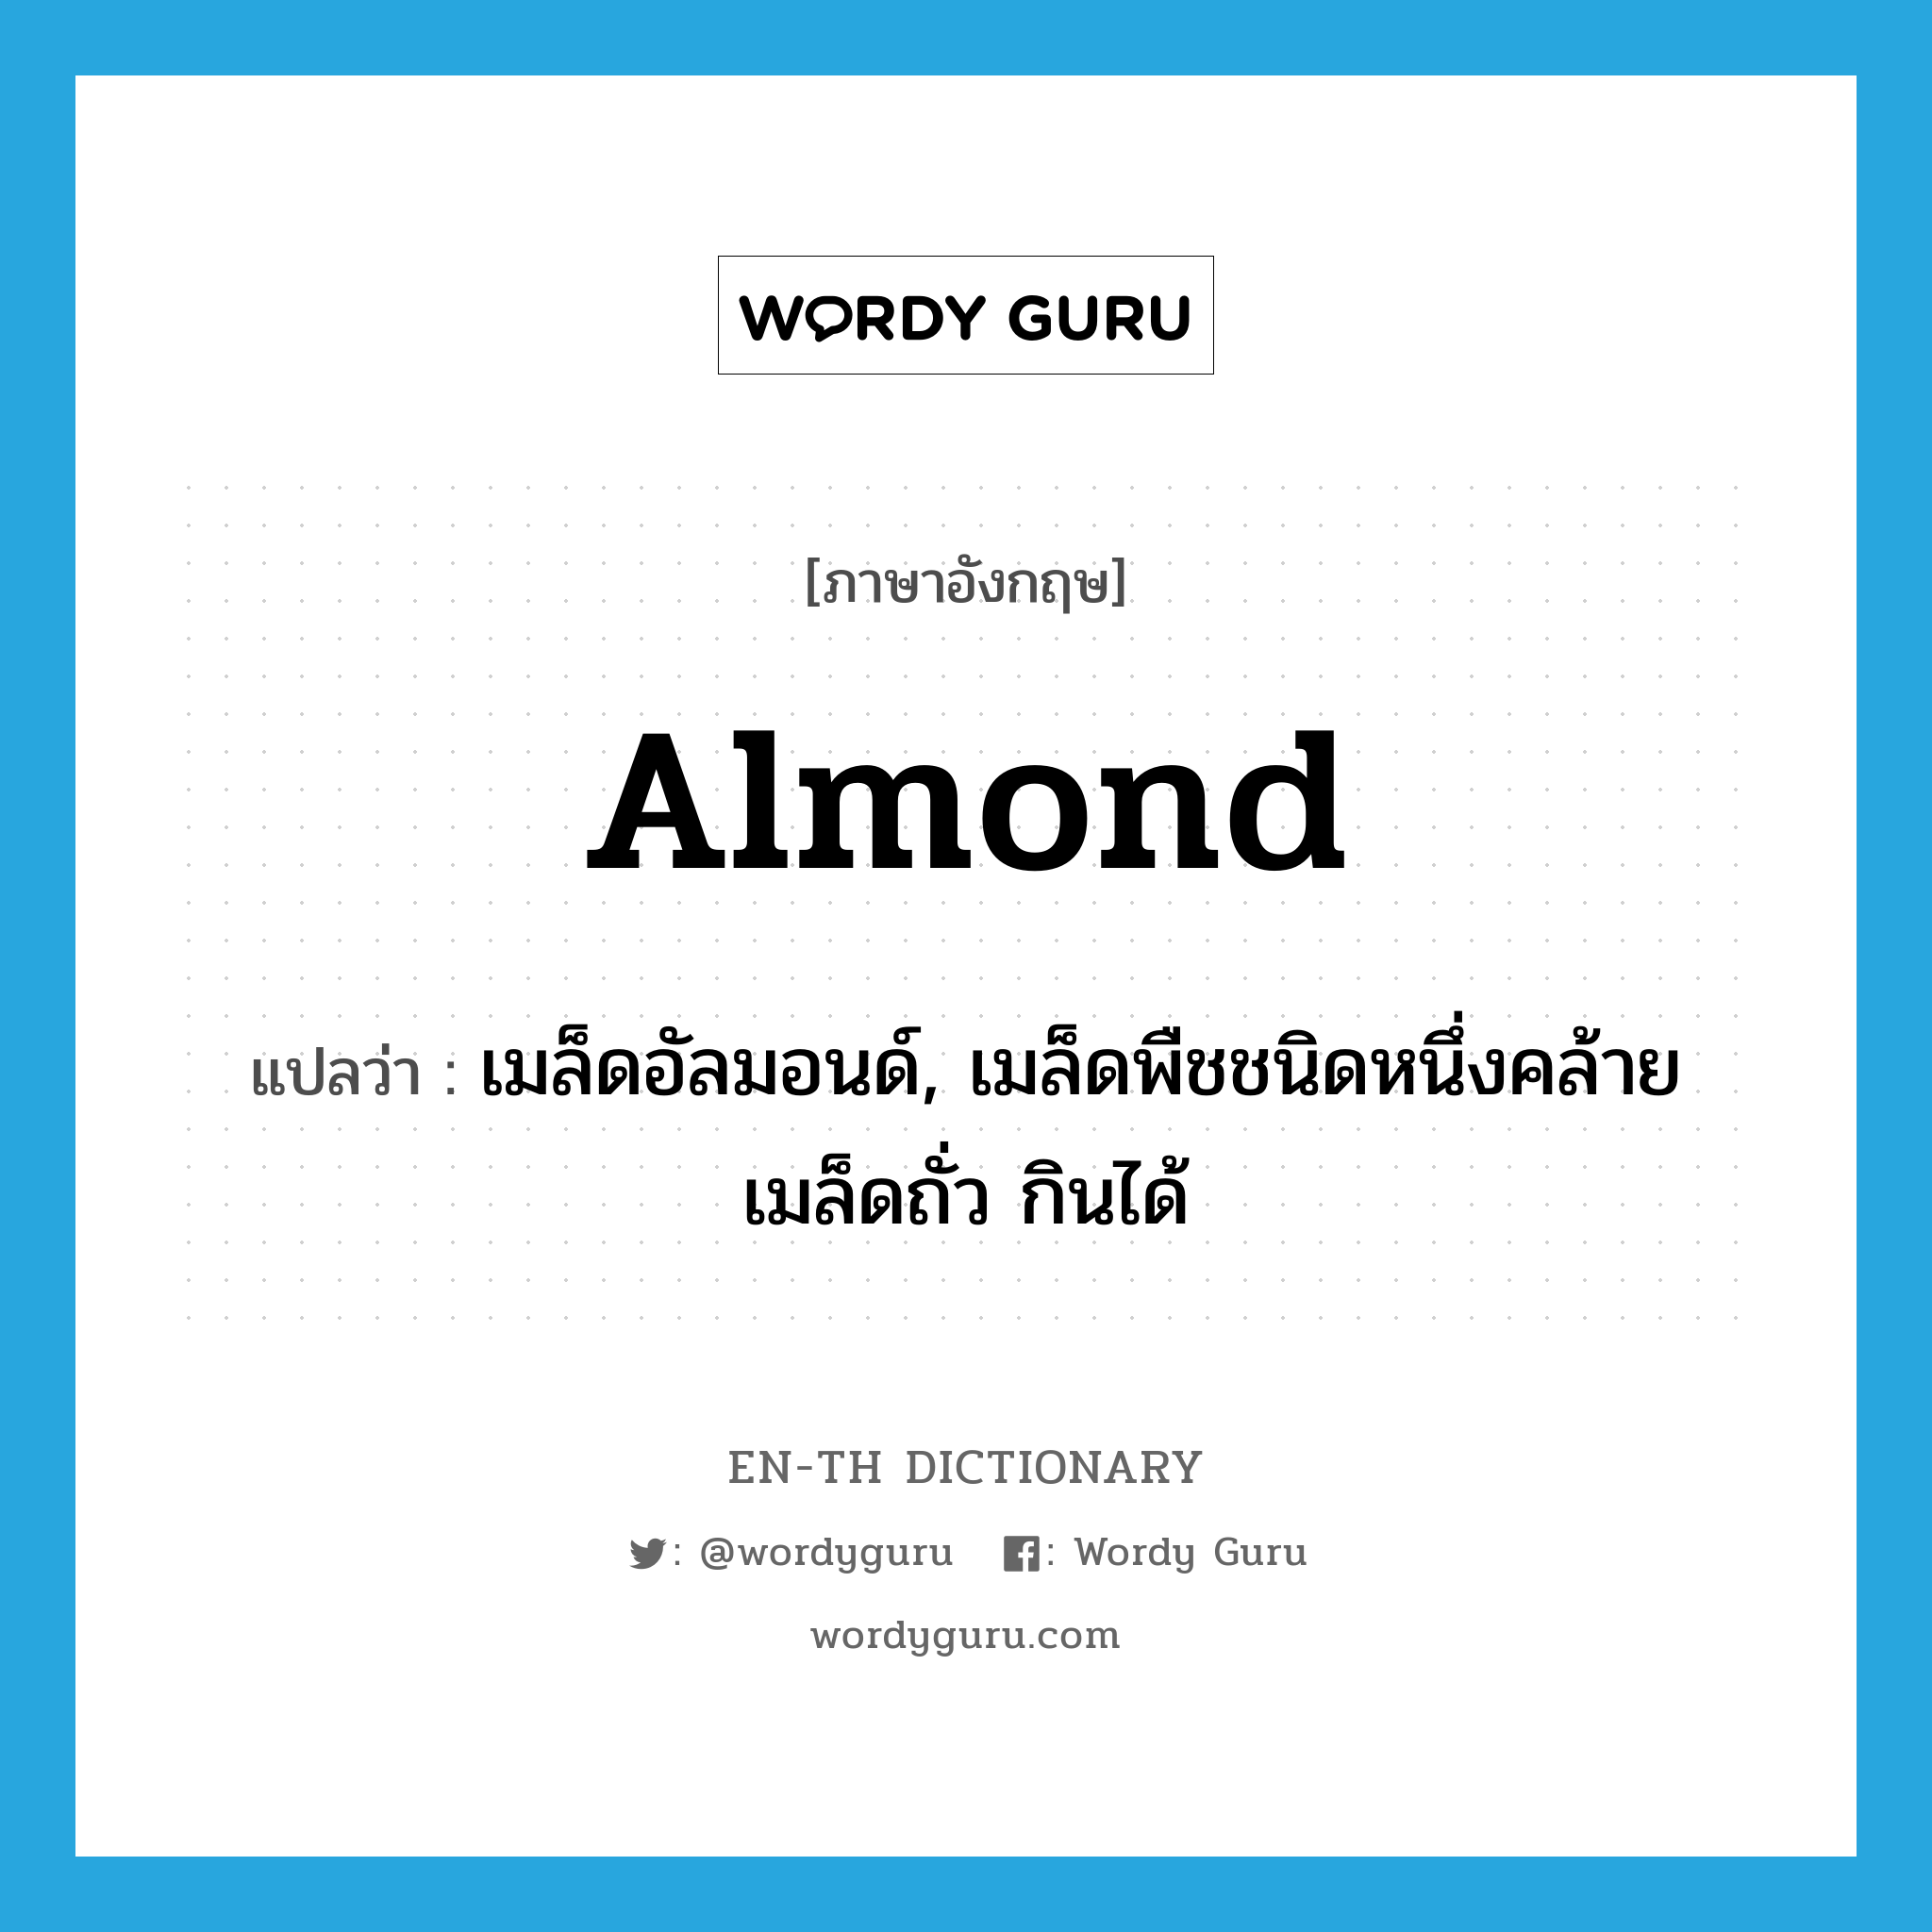 almond แปลว่า?, คำศัพท์ภาษาอังกฤษ almond แปลว่า เมล็ดอัลมอนด์, เมล็ดพืชชนิดหนึ่งคล้ายเมล็ดถั่ว กินได้ ประเภท N หมวด N